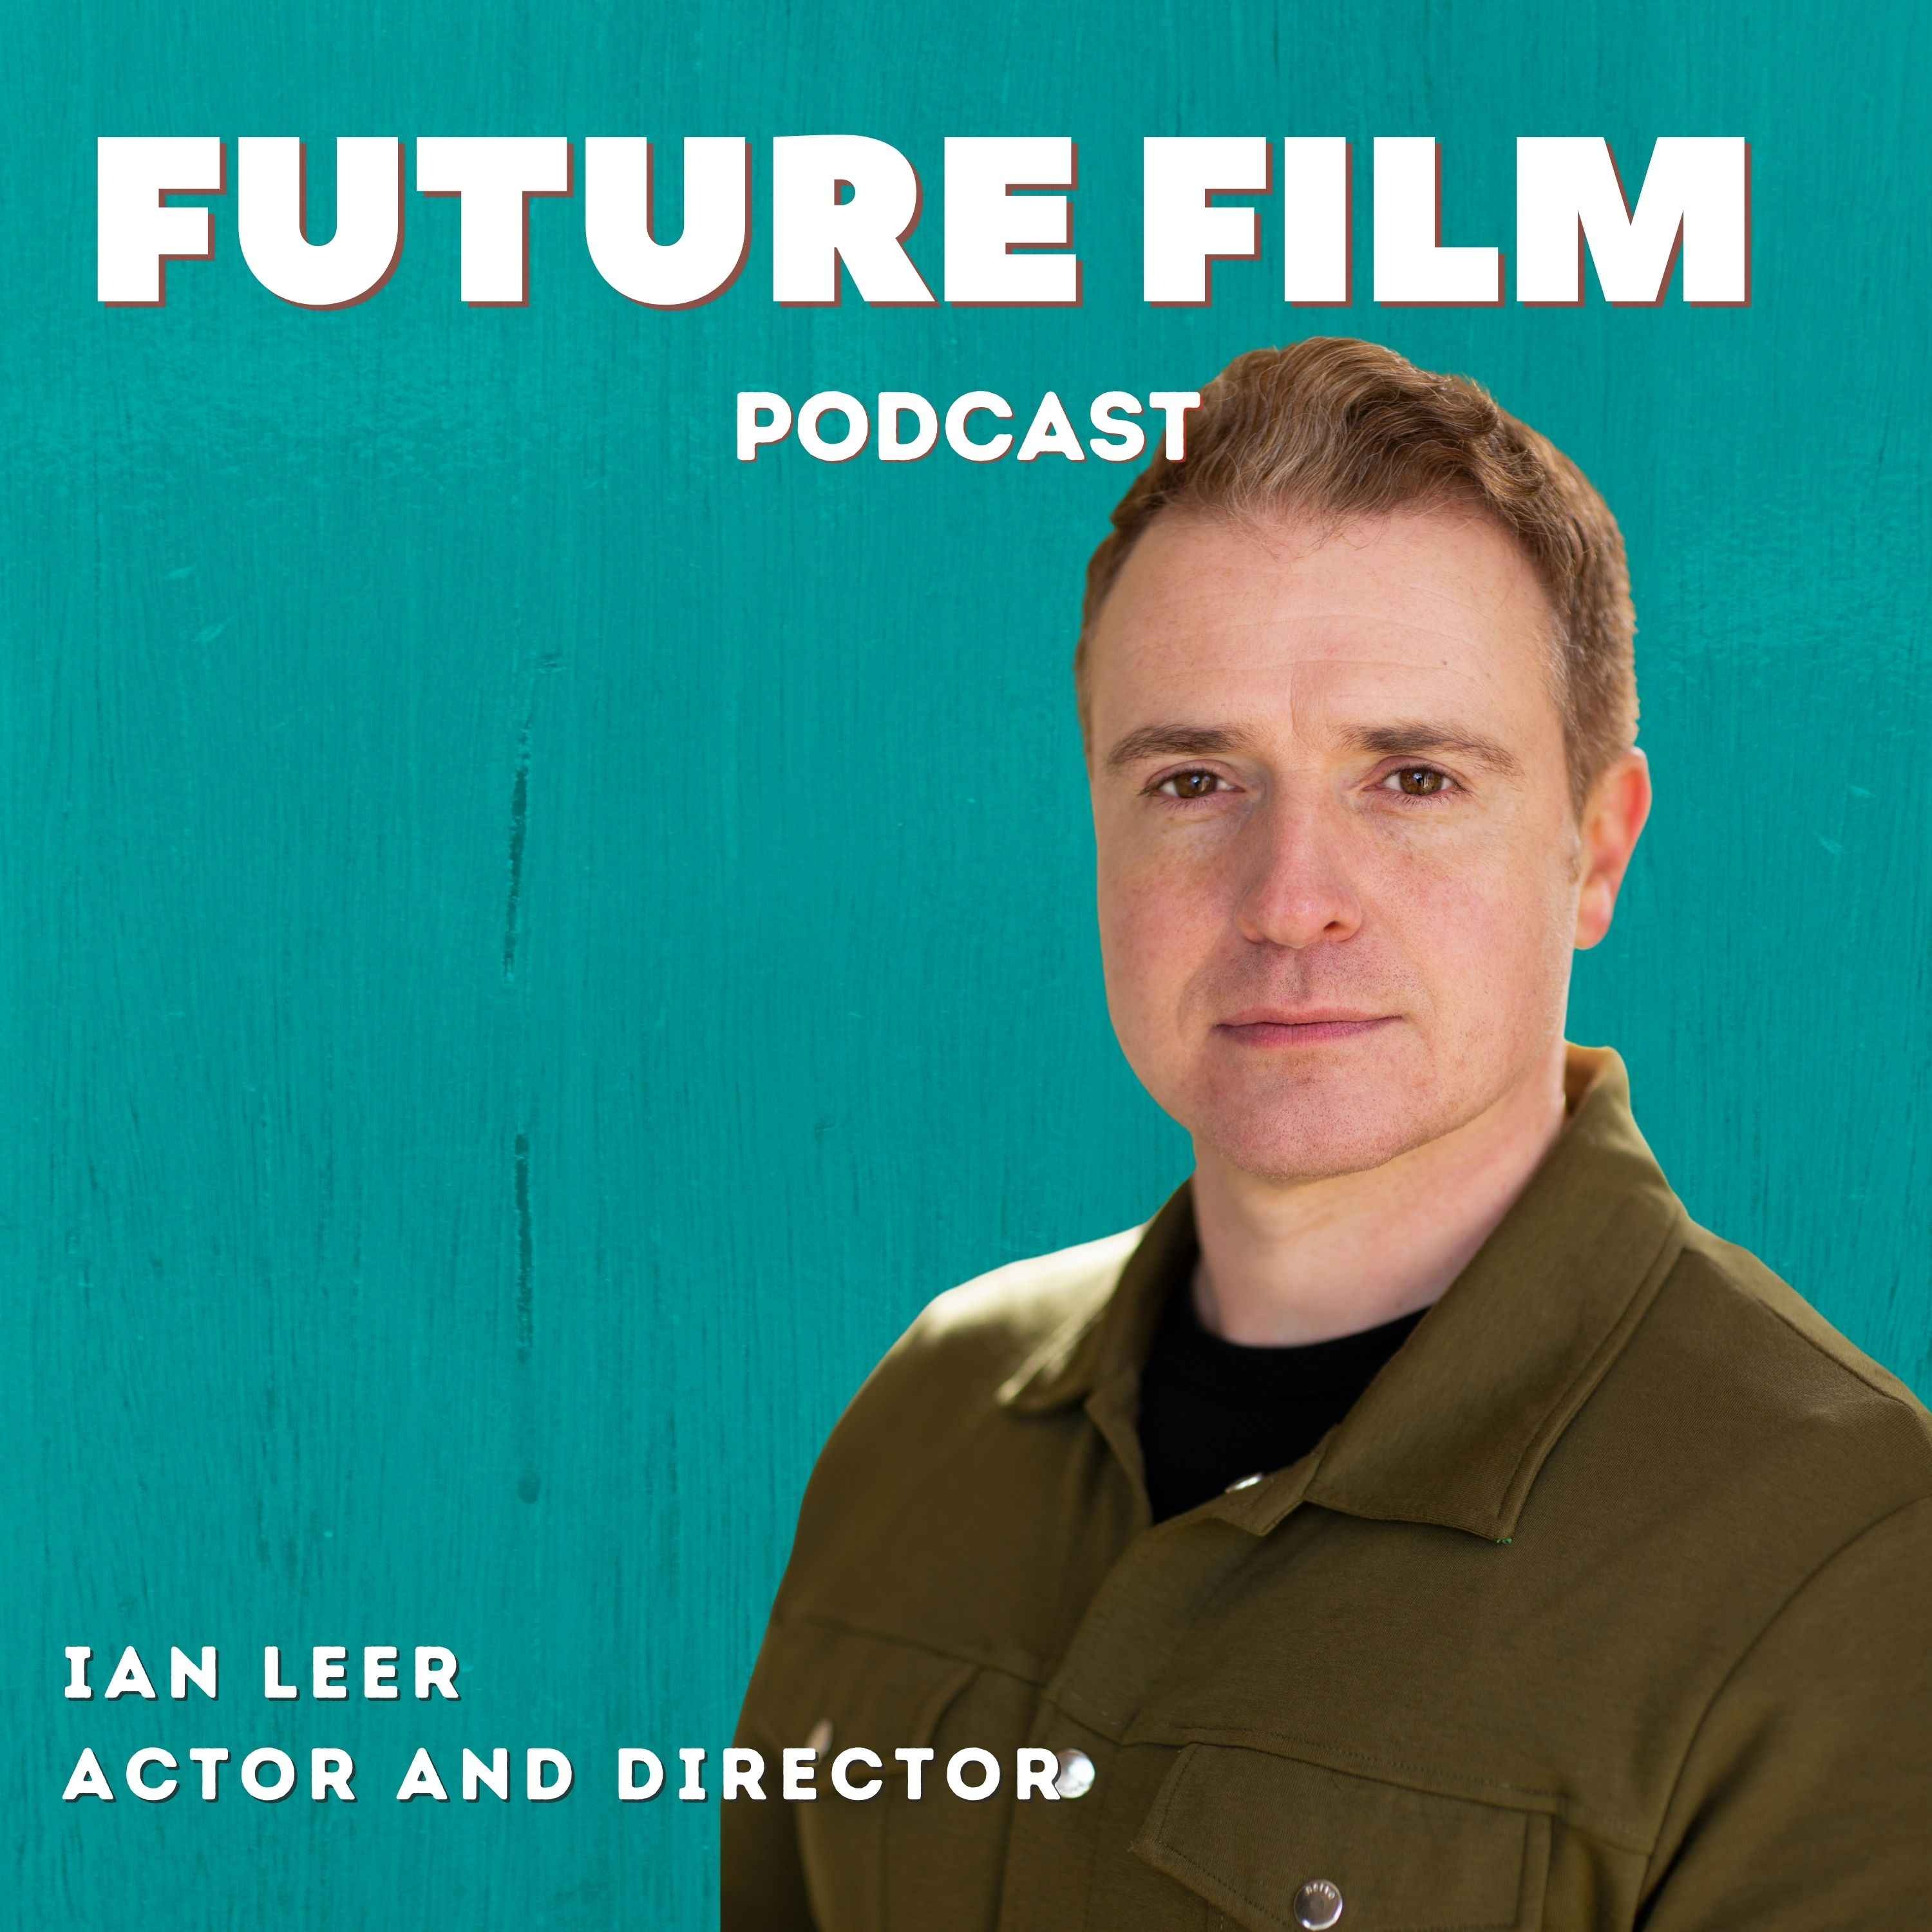 Ian Leer filmmaking vs acting